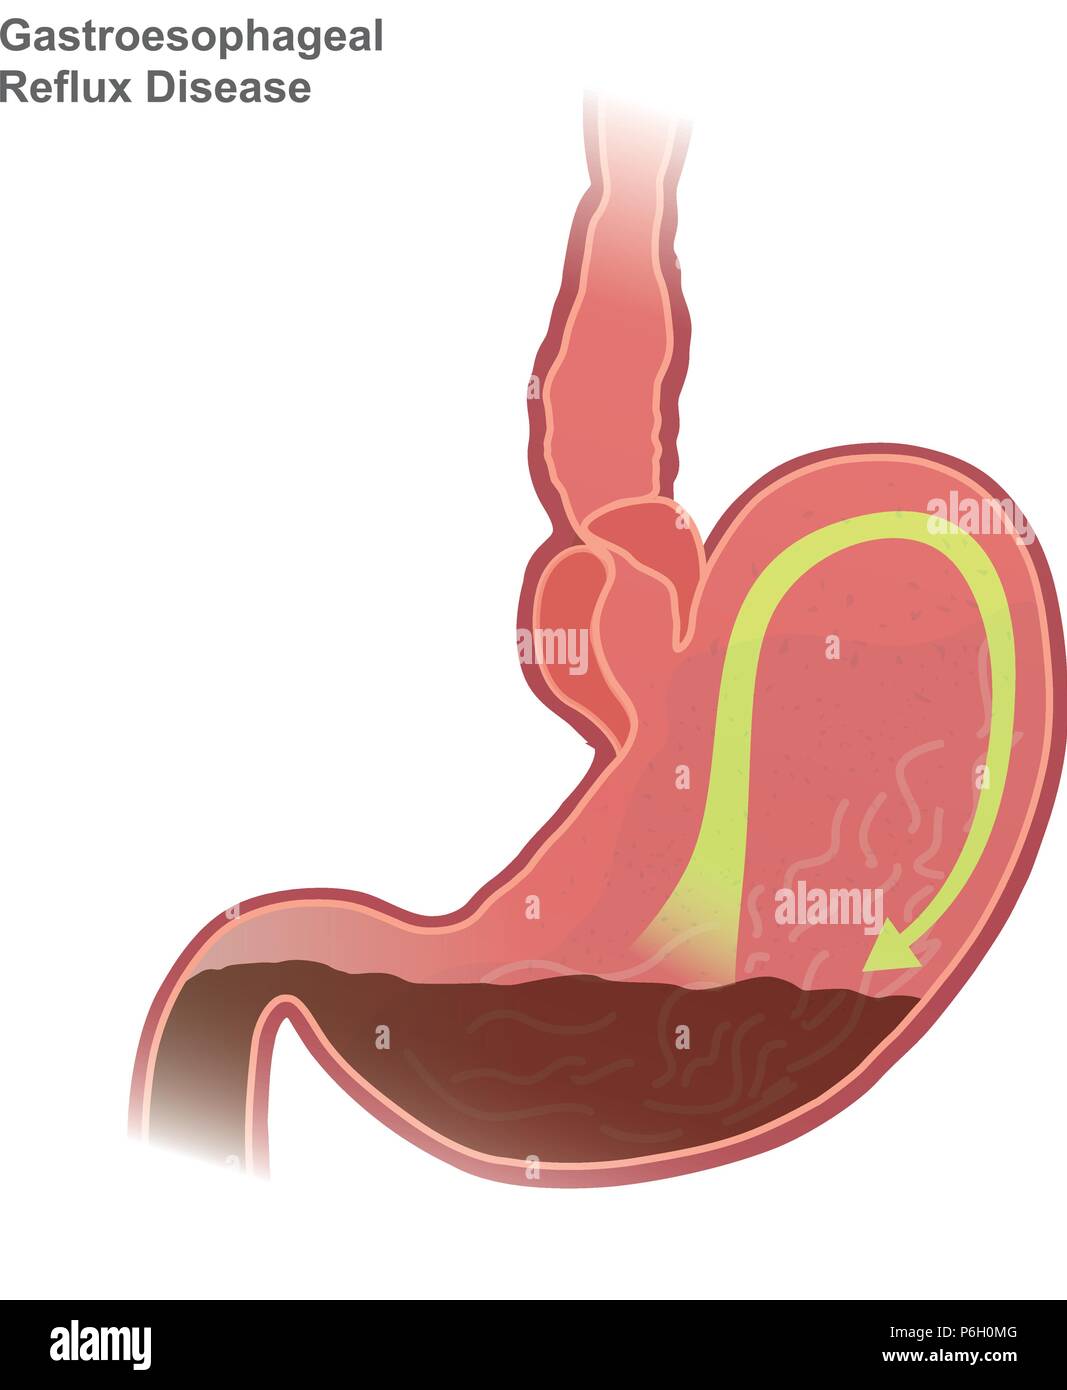 Gastroösophageale Refluxkrankheit GERD, auch als Acid Reflux genannt, ist eine langfristige Zustand, in dem Mageninhalt in die Speiseröhre kommen Resultat Stock Vektor